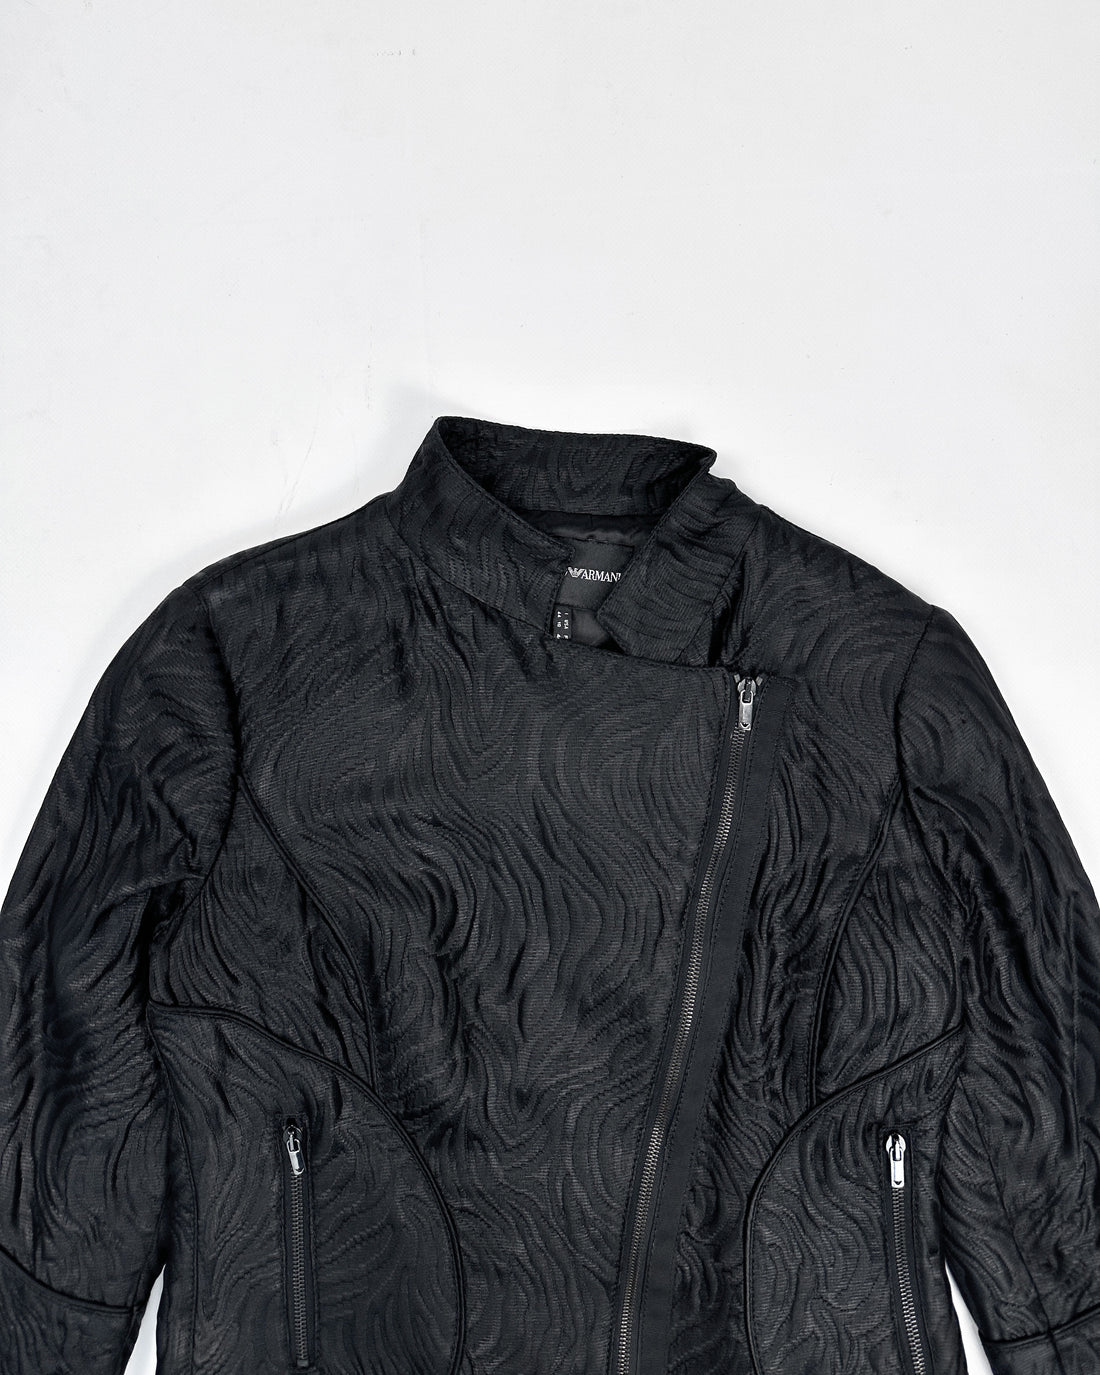 Armani Asymmetric Black Texture Jacket 2000's